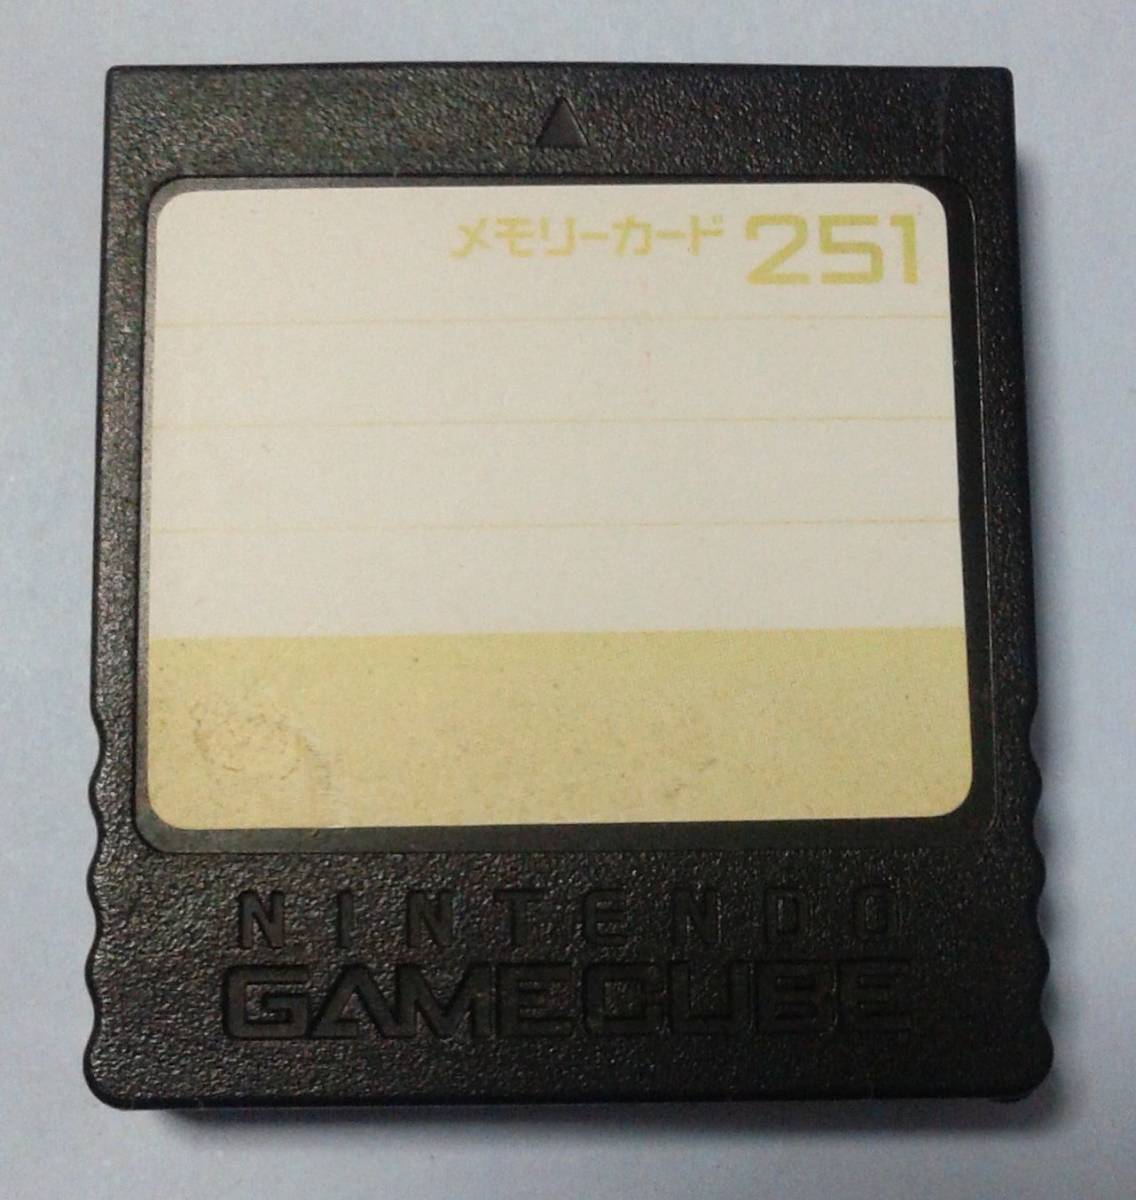 NINTENDO GAMECUBE メモリーカード251 その他 テレビゲーム 本・音楽・ゲーム 安価